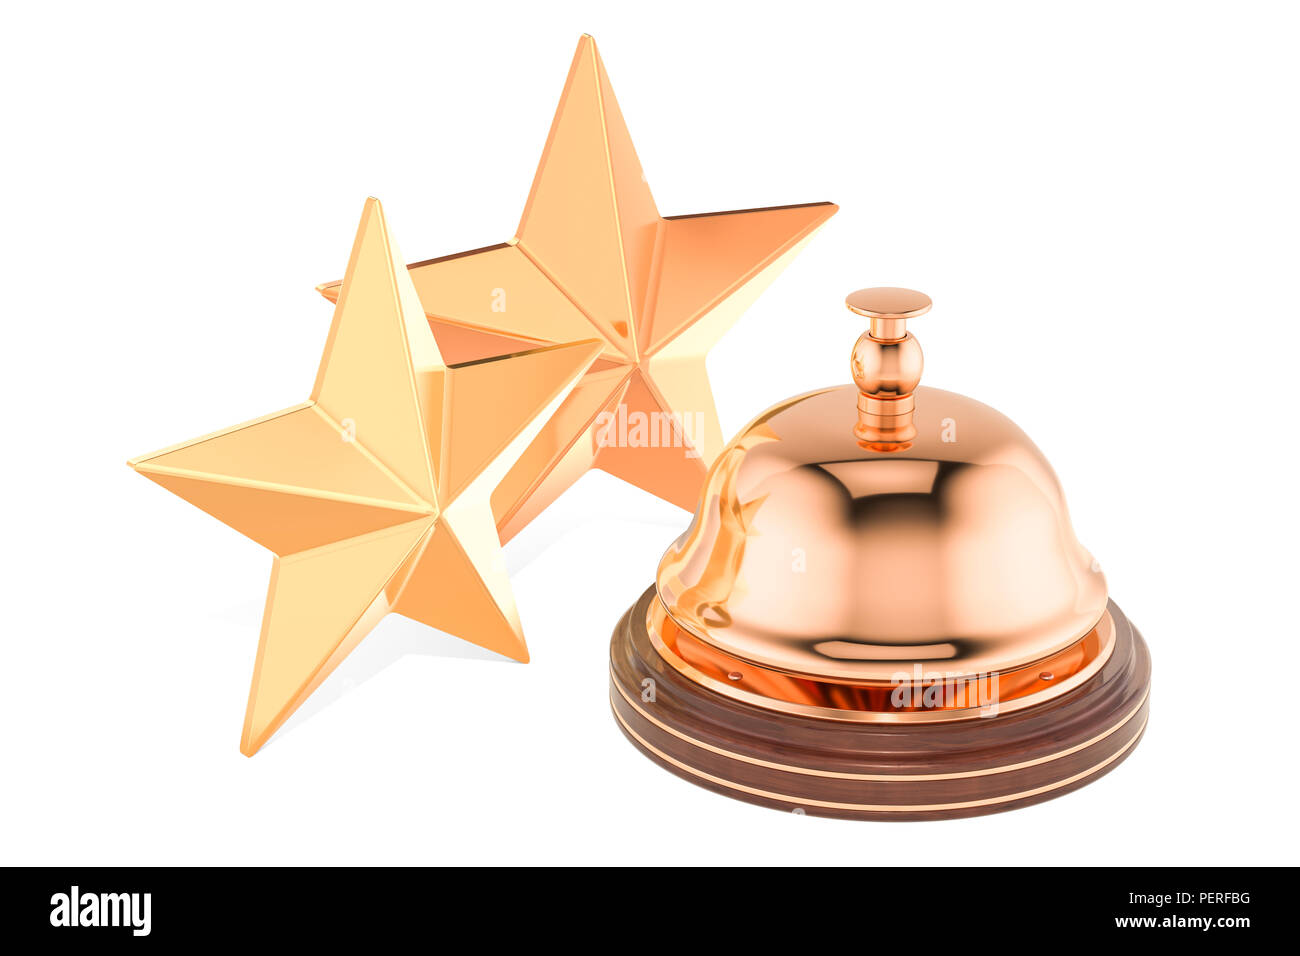 Rezeption Glocke mit 2 Sterne Bewertung von Konzept, 3D-Rendering auf weißem Hintergrund Stockfoto